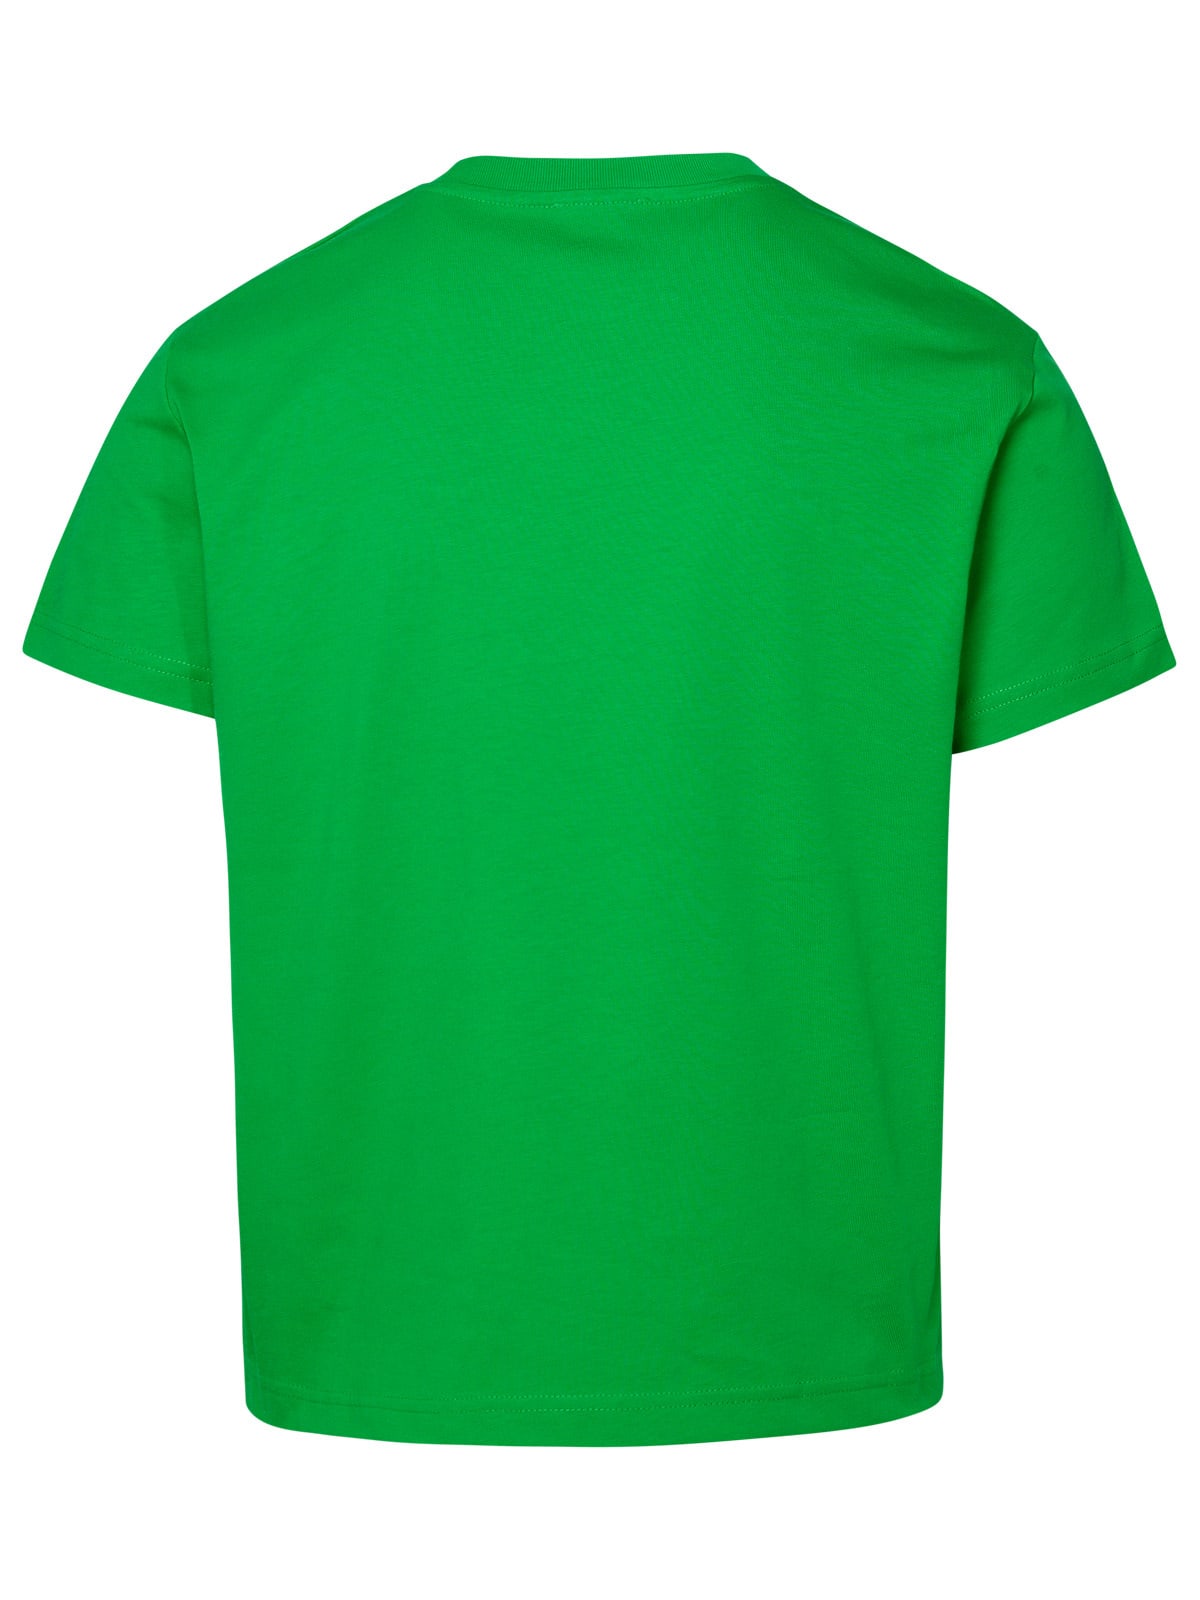 Shop Apc Pokémon The Portrait Green Cotton T-shirt